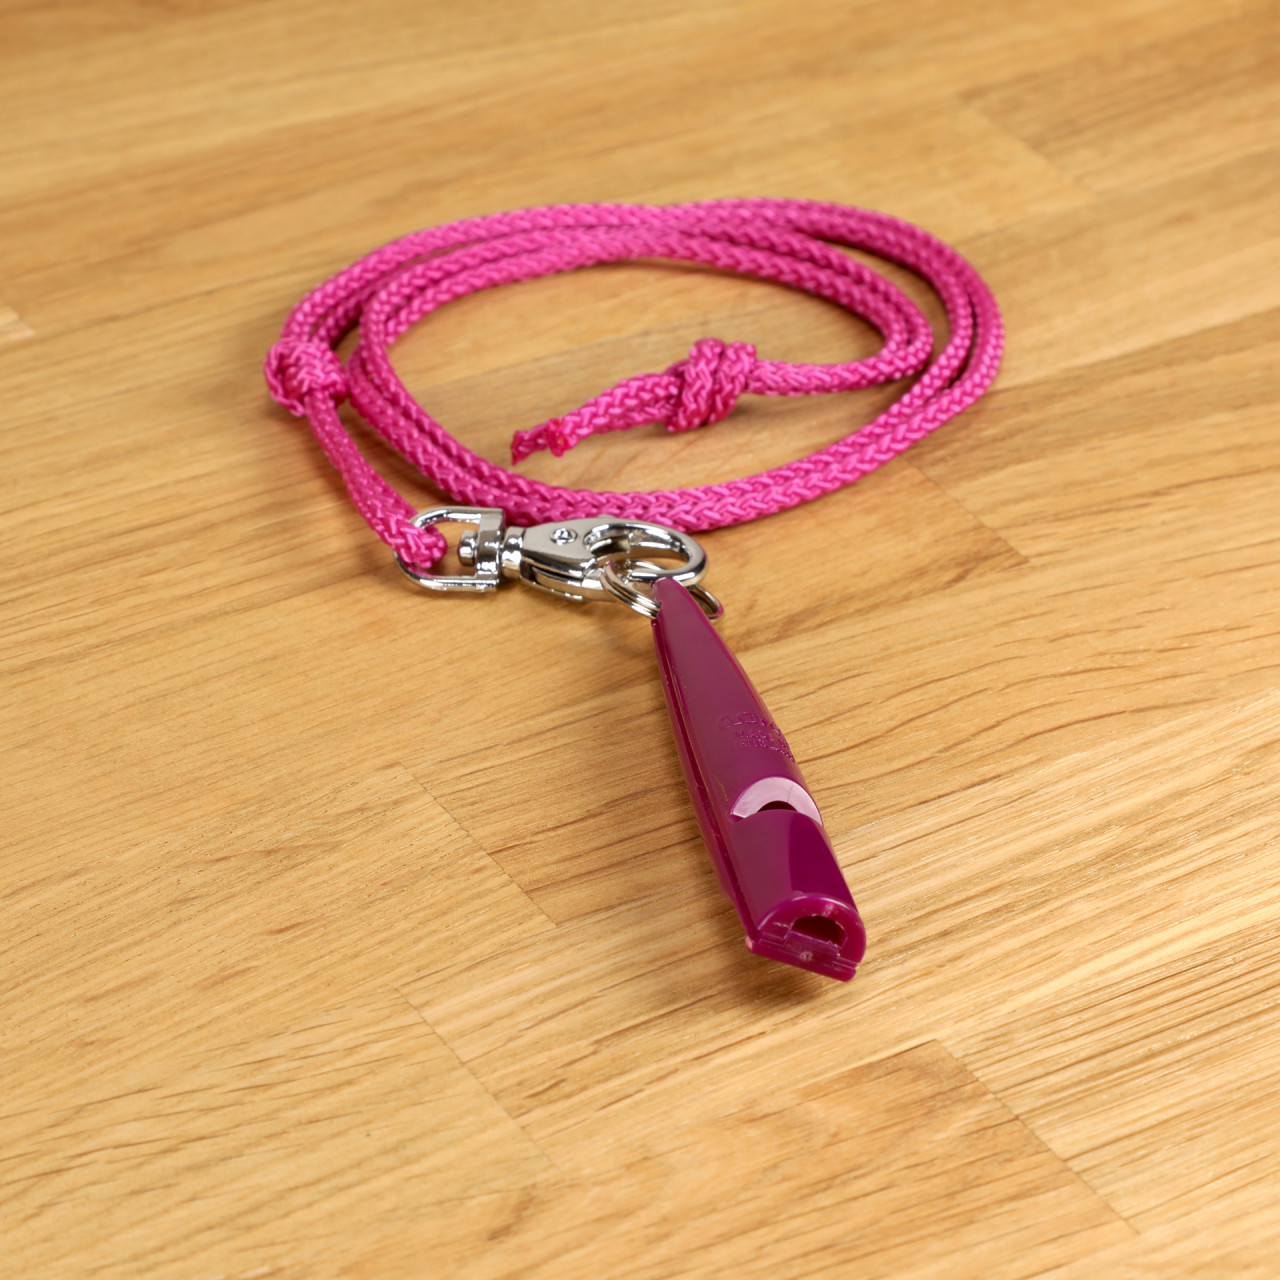 ACME Pfeife 210,5 purpur mit Pfeifenband